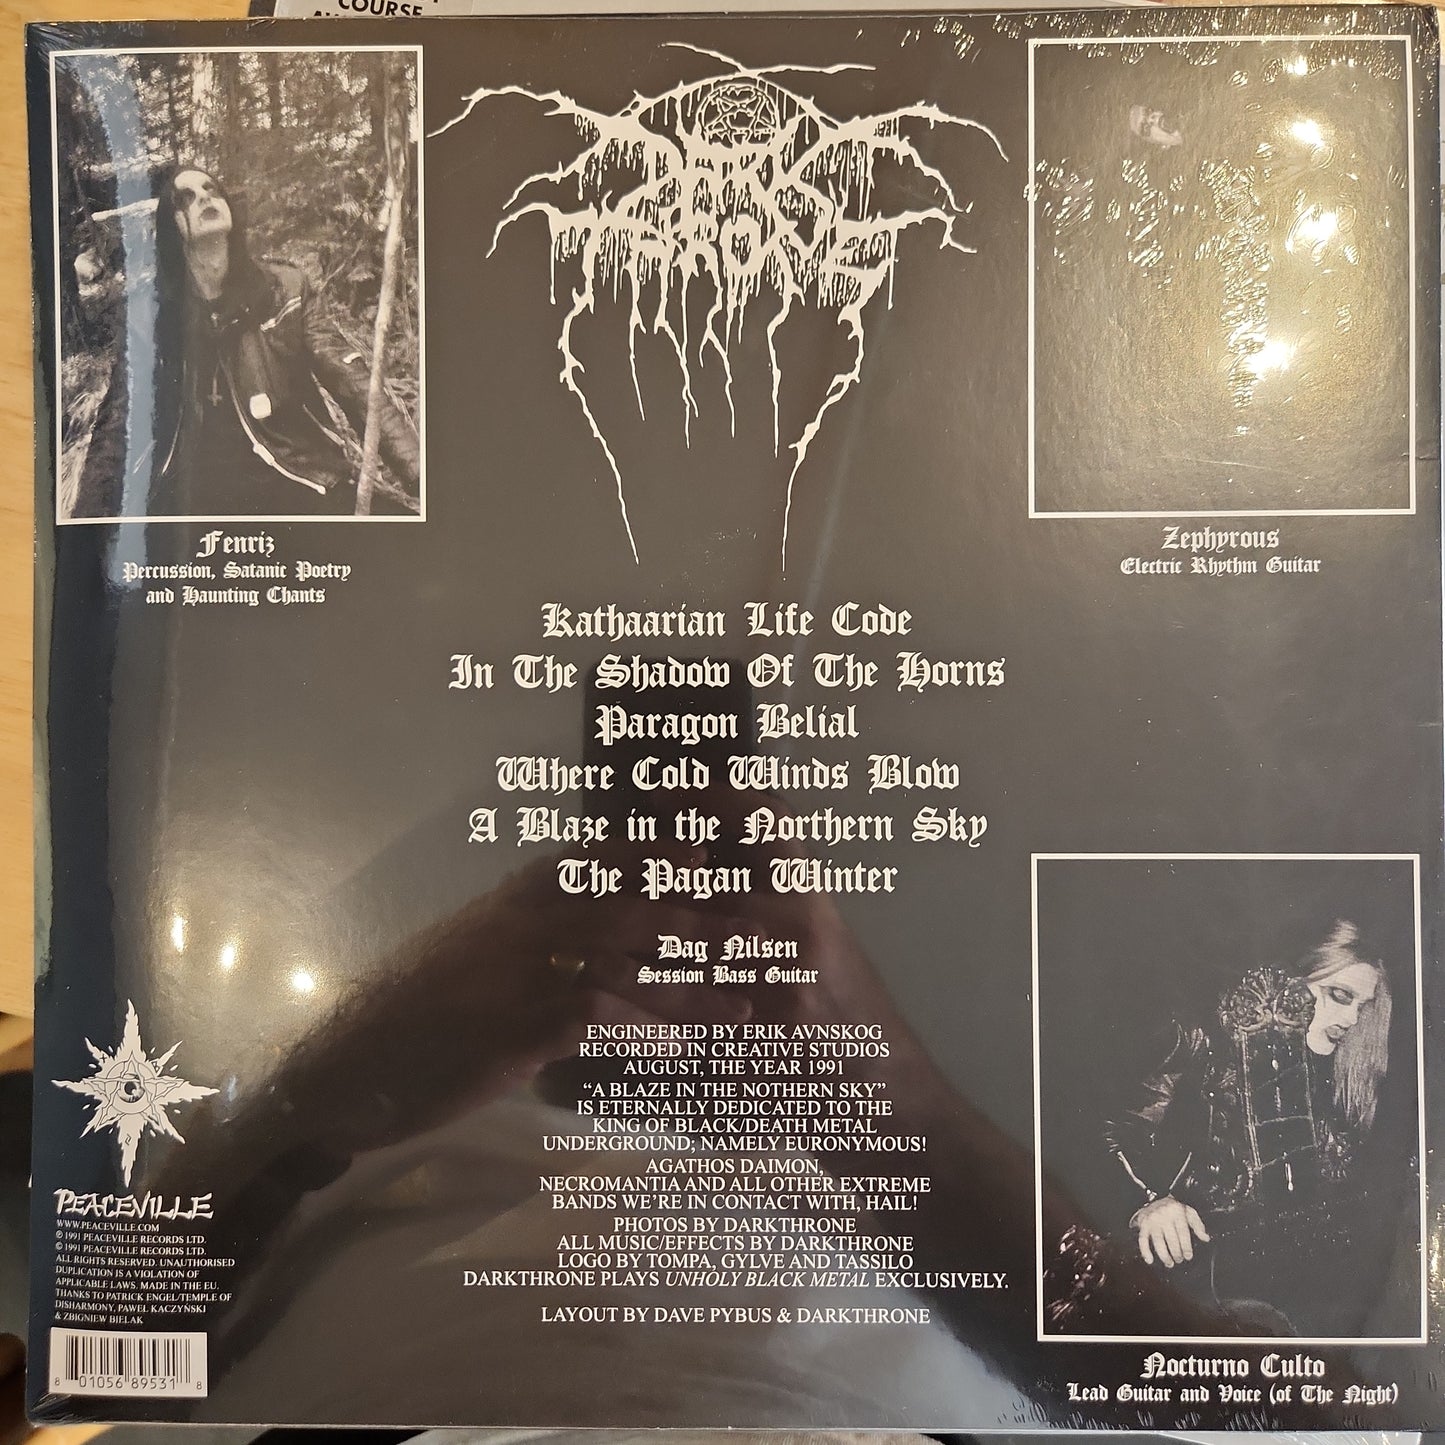 Darkthrone - A Blaze in the Northern Sky - Limited White Vinyl LP